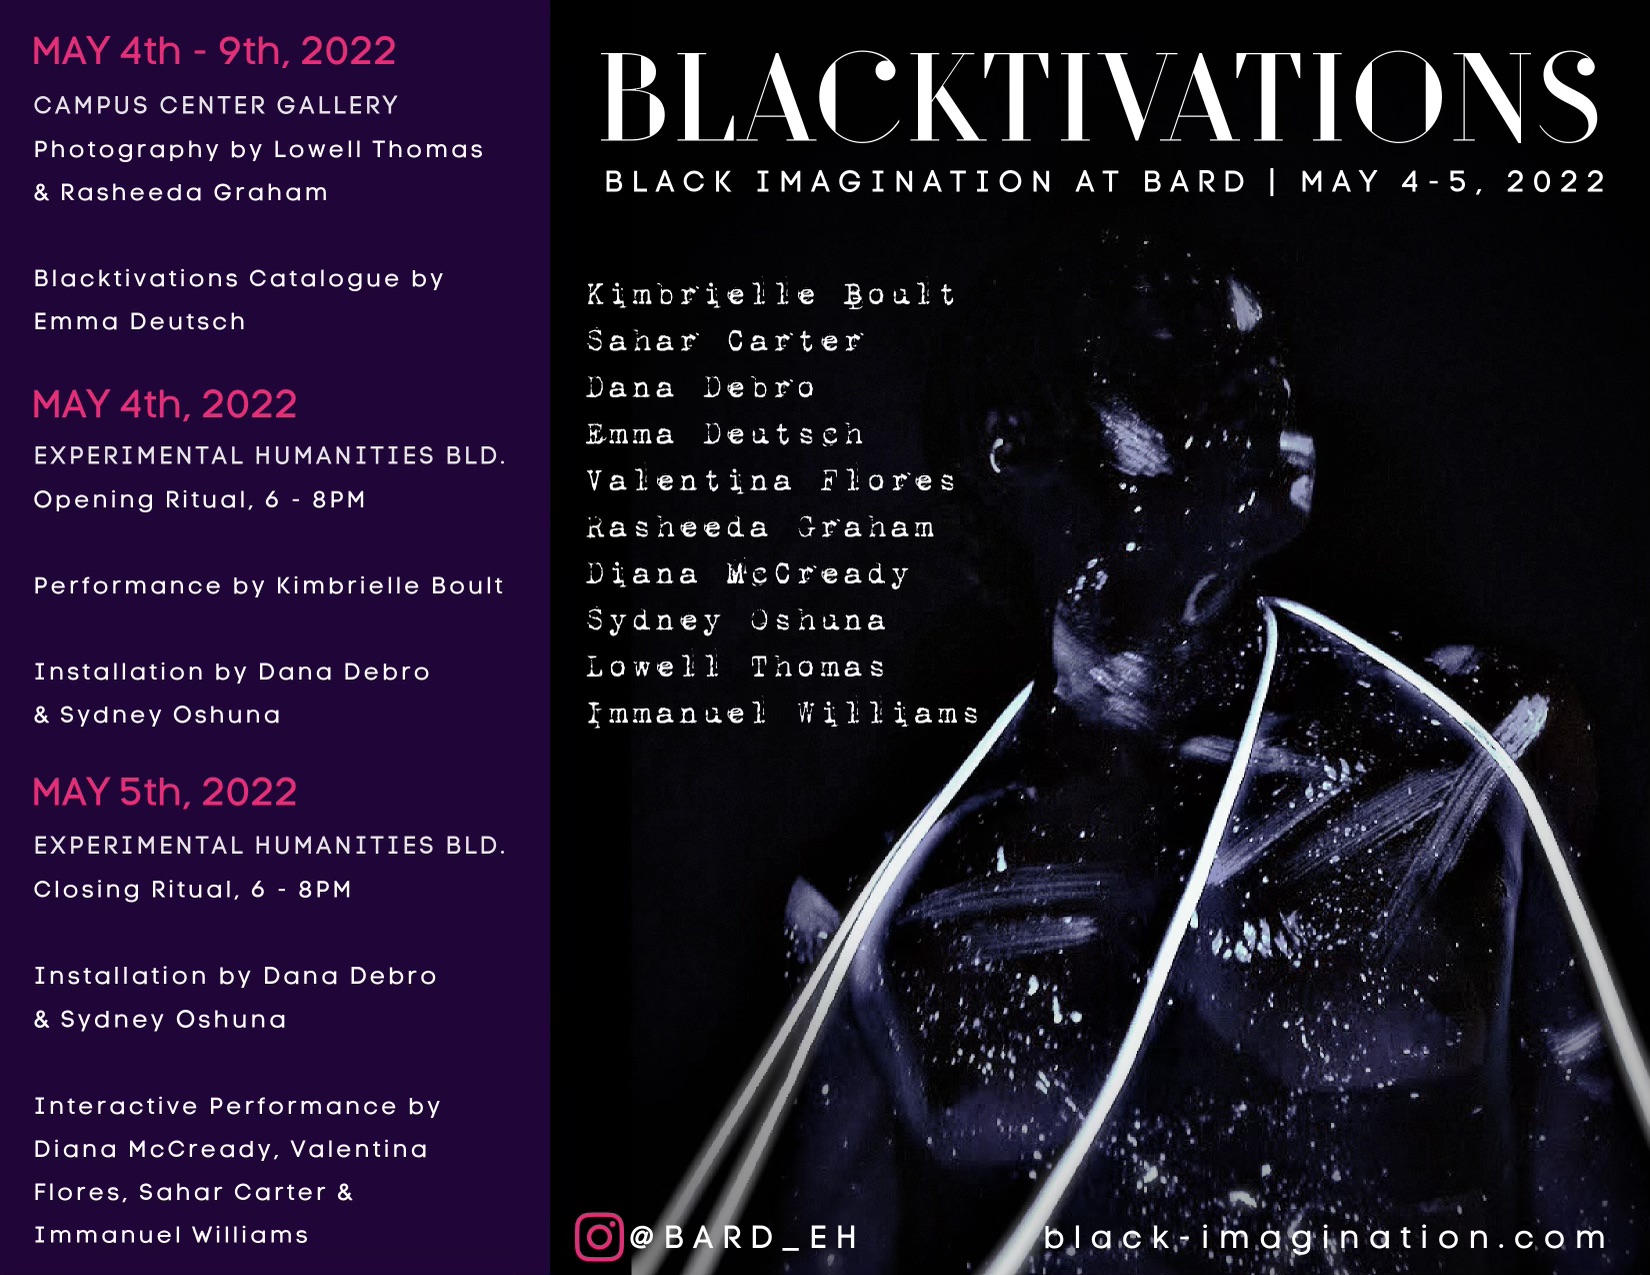 Blacktivations: Black Imagination at Bard